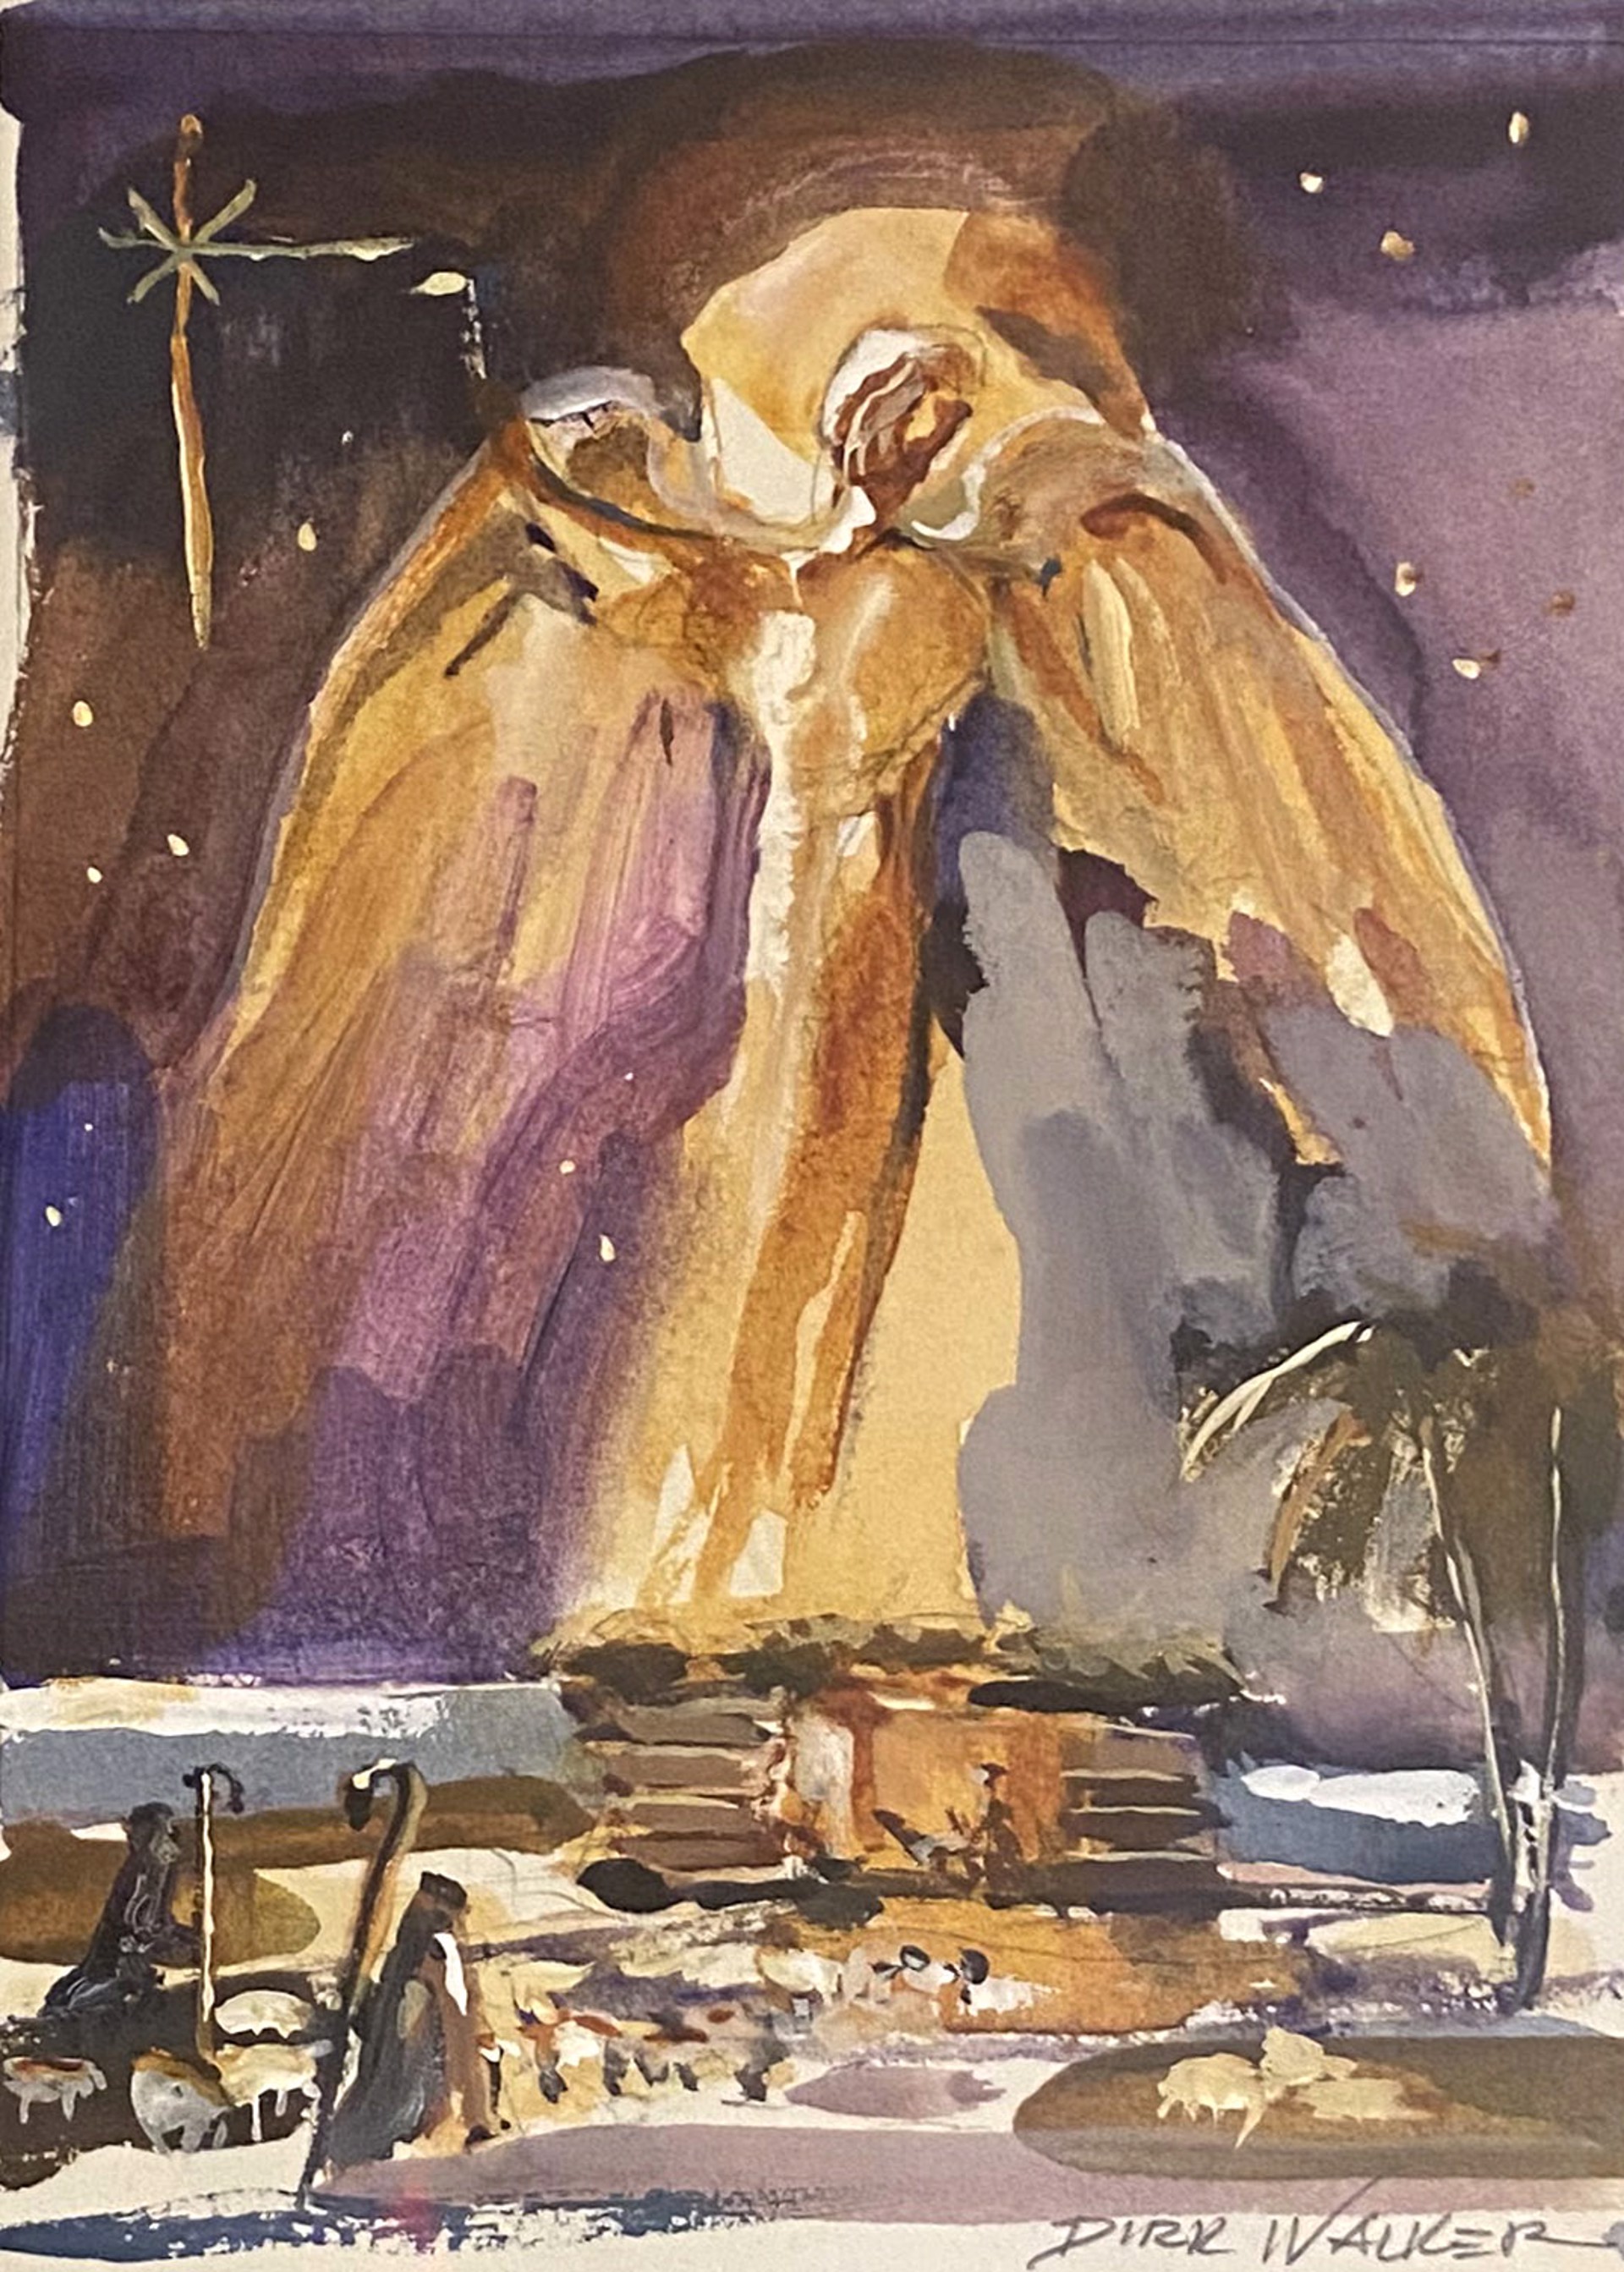 Angel by Dirk Walker